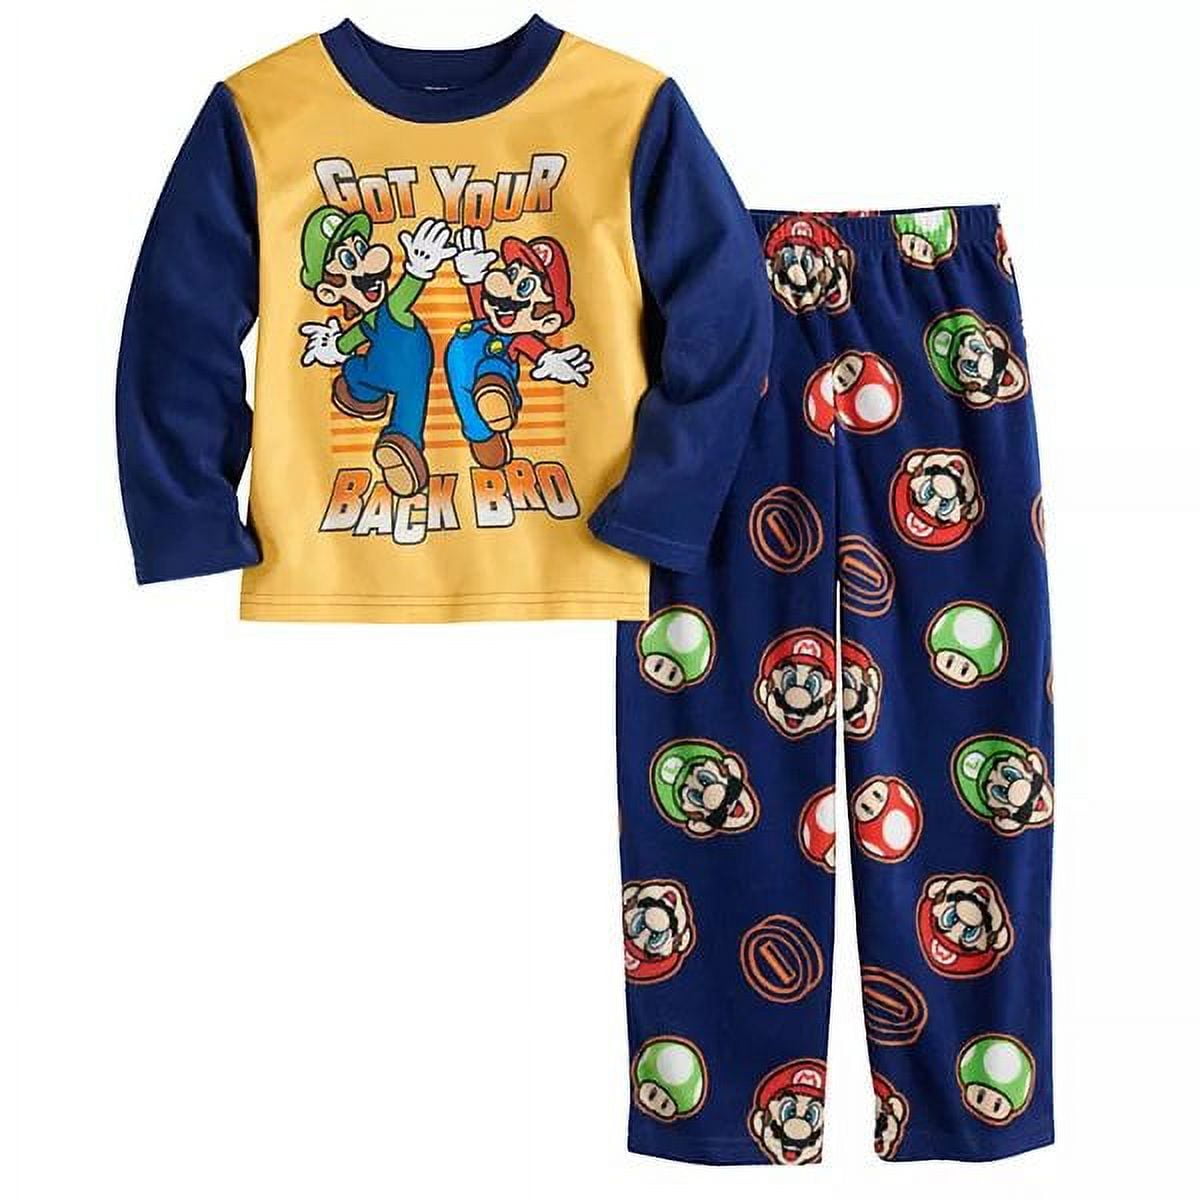 Super Mario Got Your Back 2-Piece Pajama Set - Walmart.com